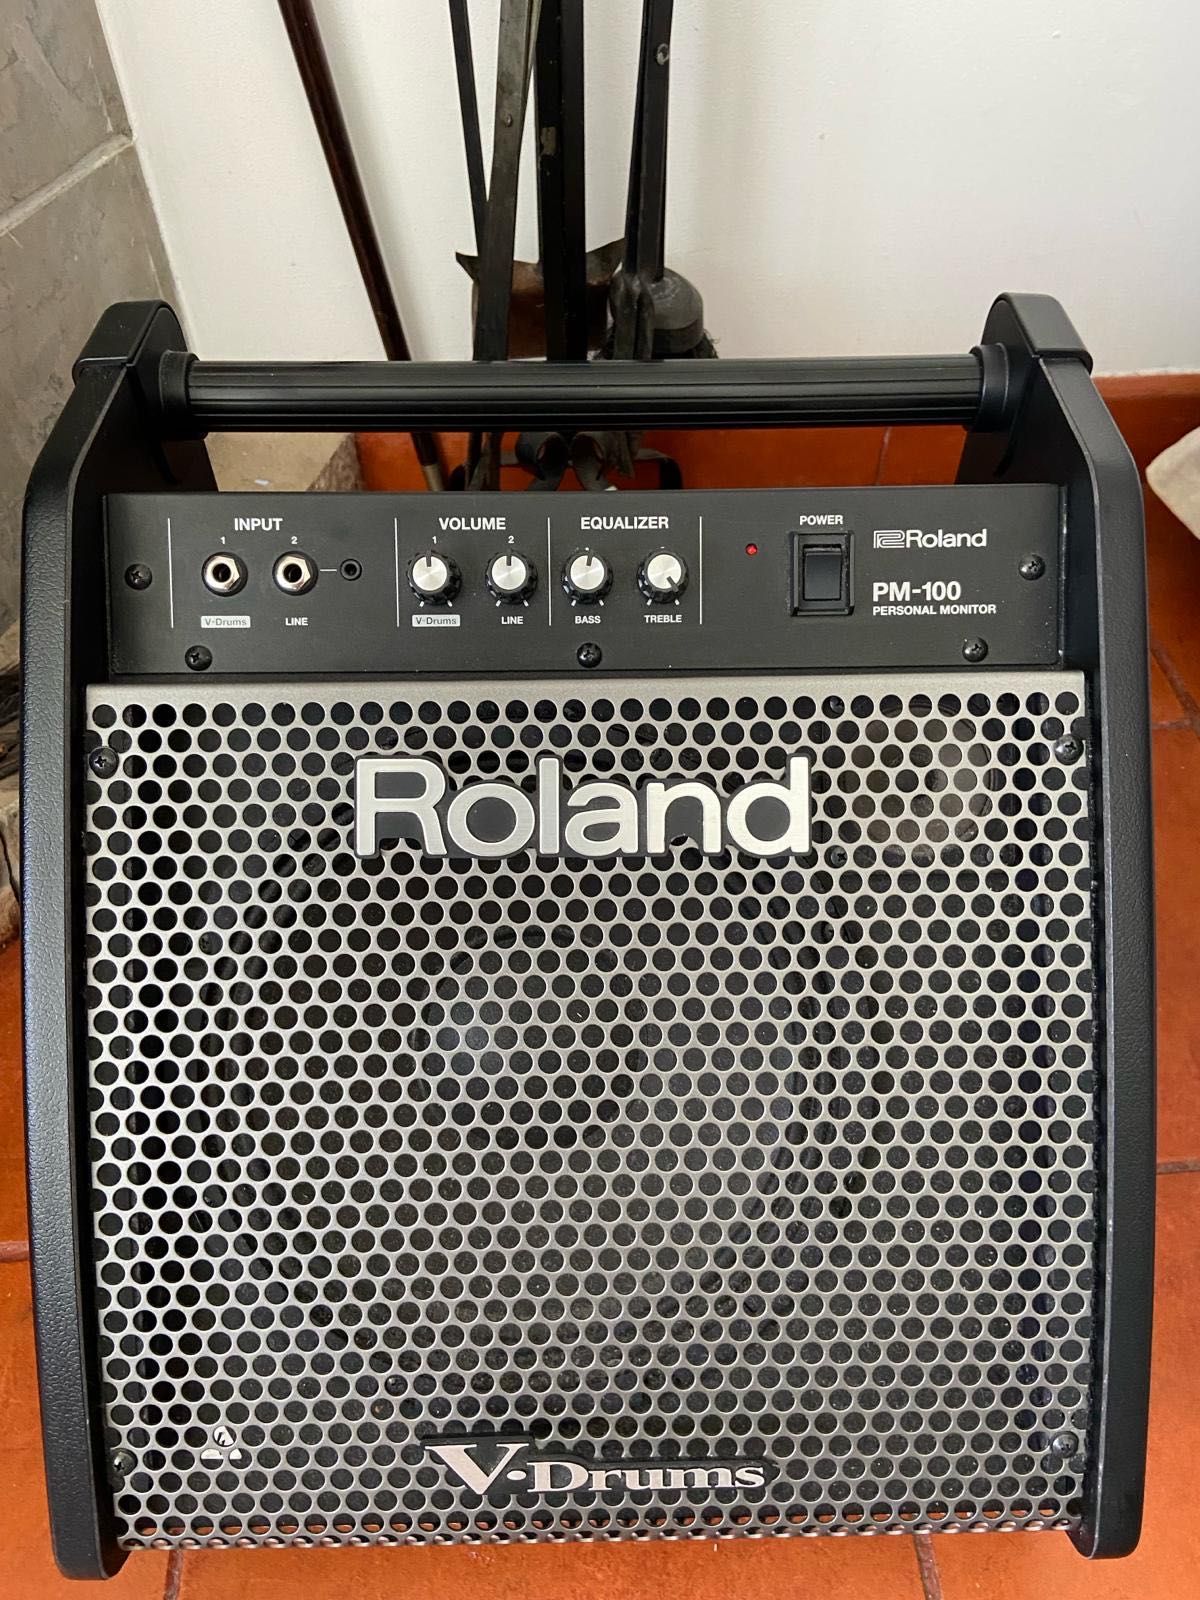 Bateria elétrica Roland 07DMK V-drum set